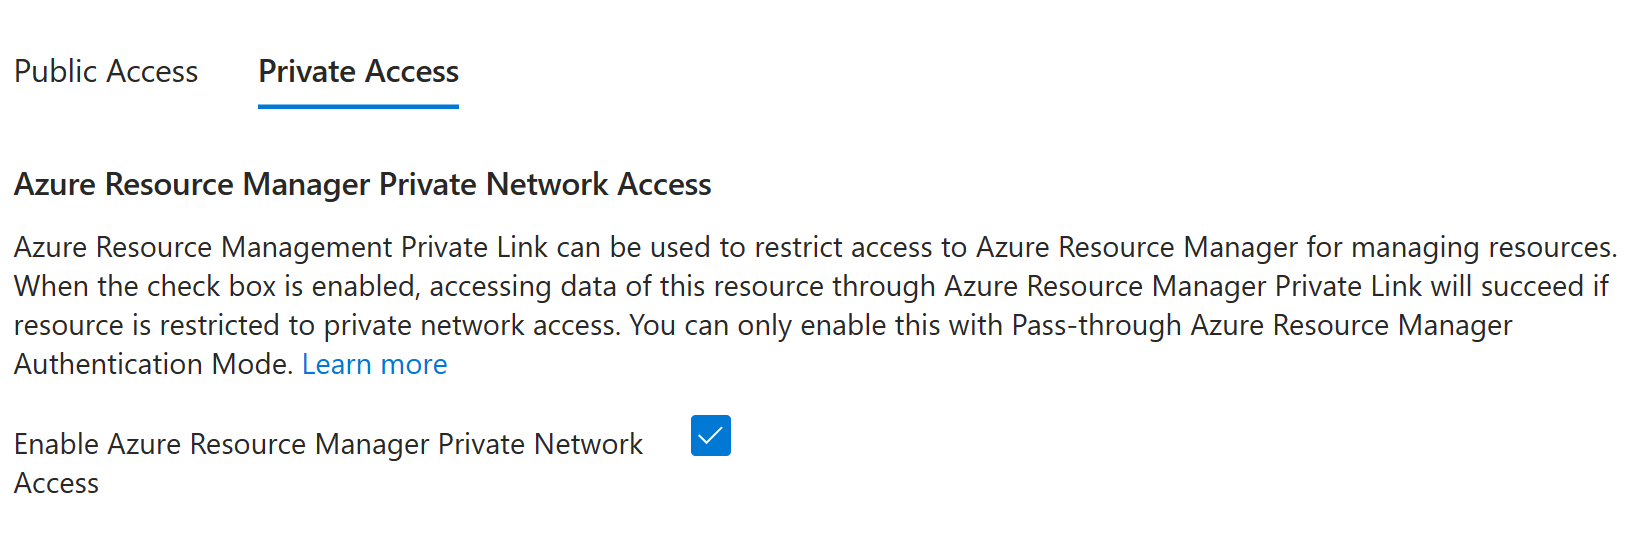 لقطة شاشة تعرض تمكين الوصول الخاص ل Azure Resource Manager تم تحديده.